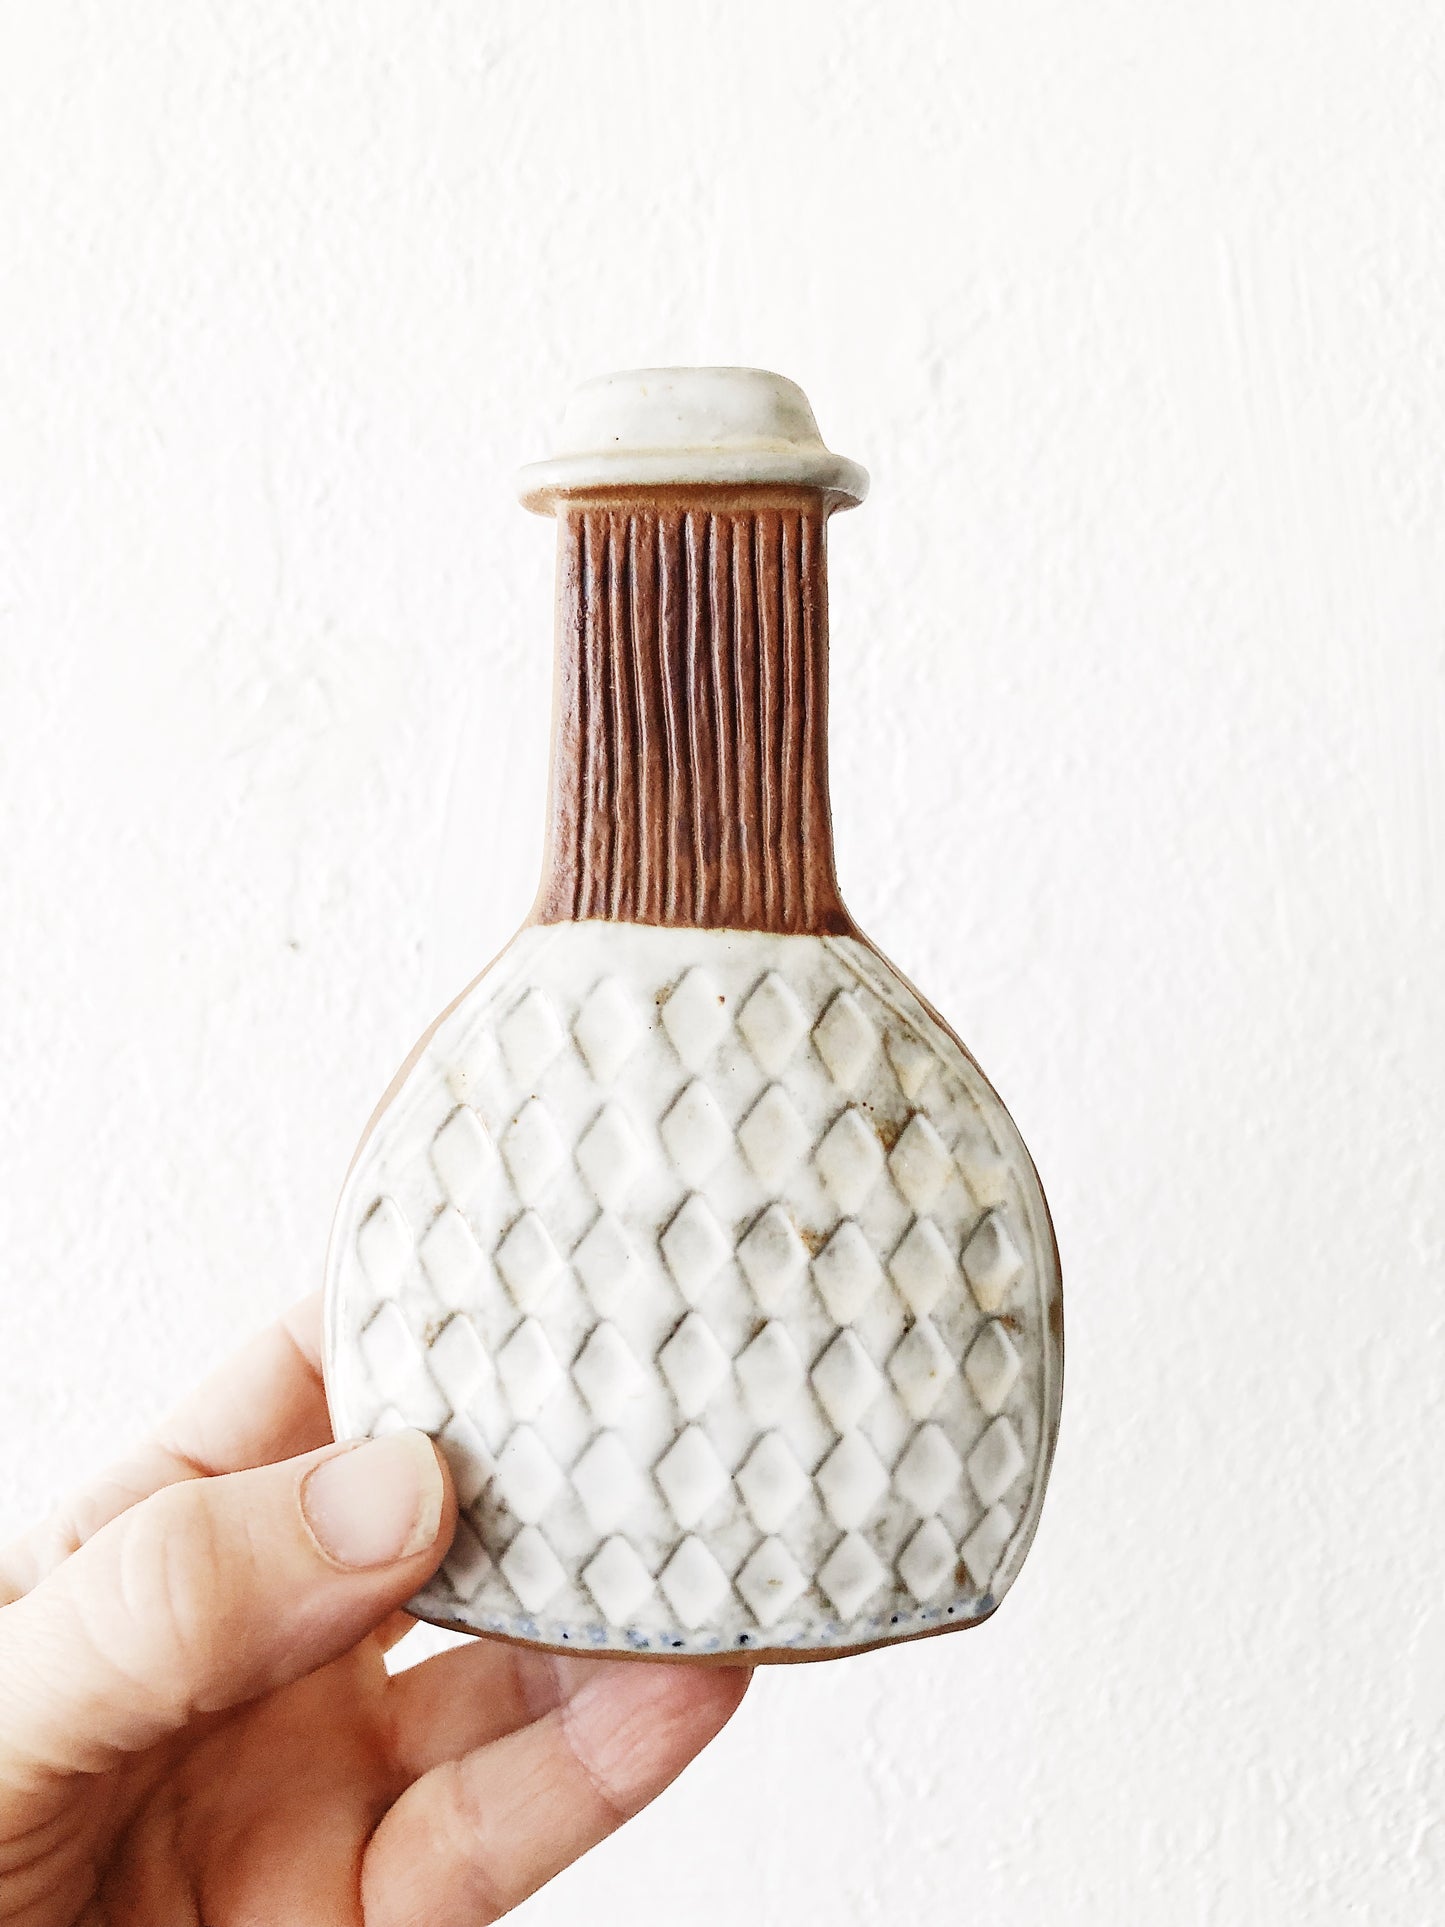 Vintage Japanese Bud Vase